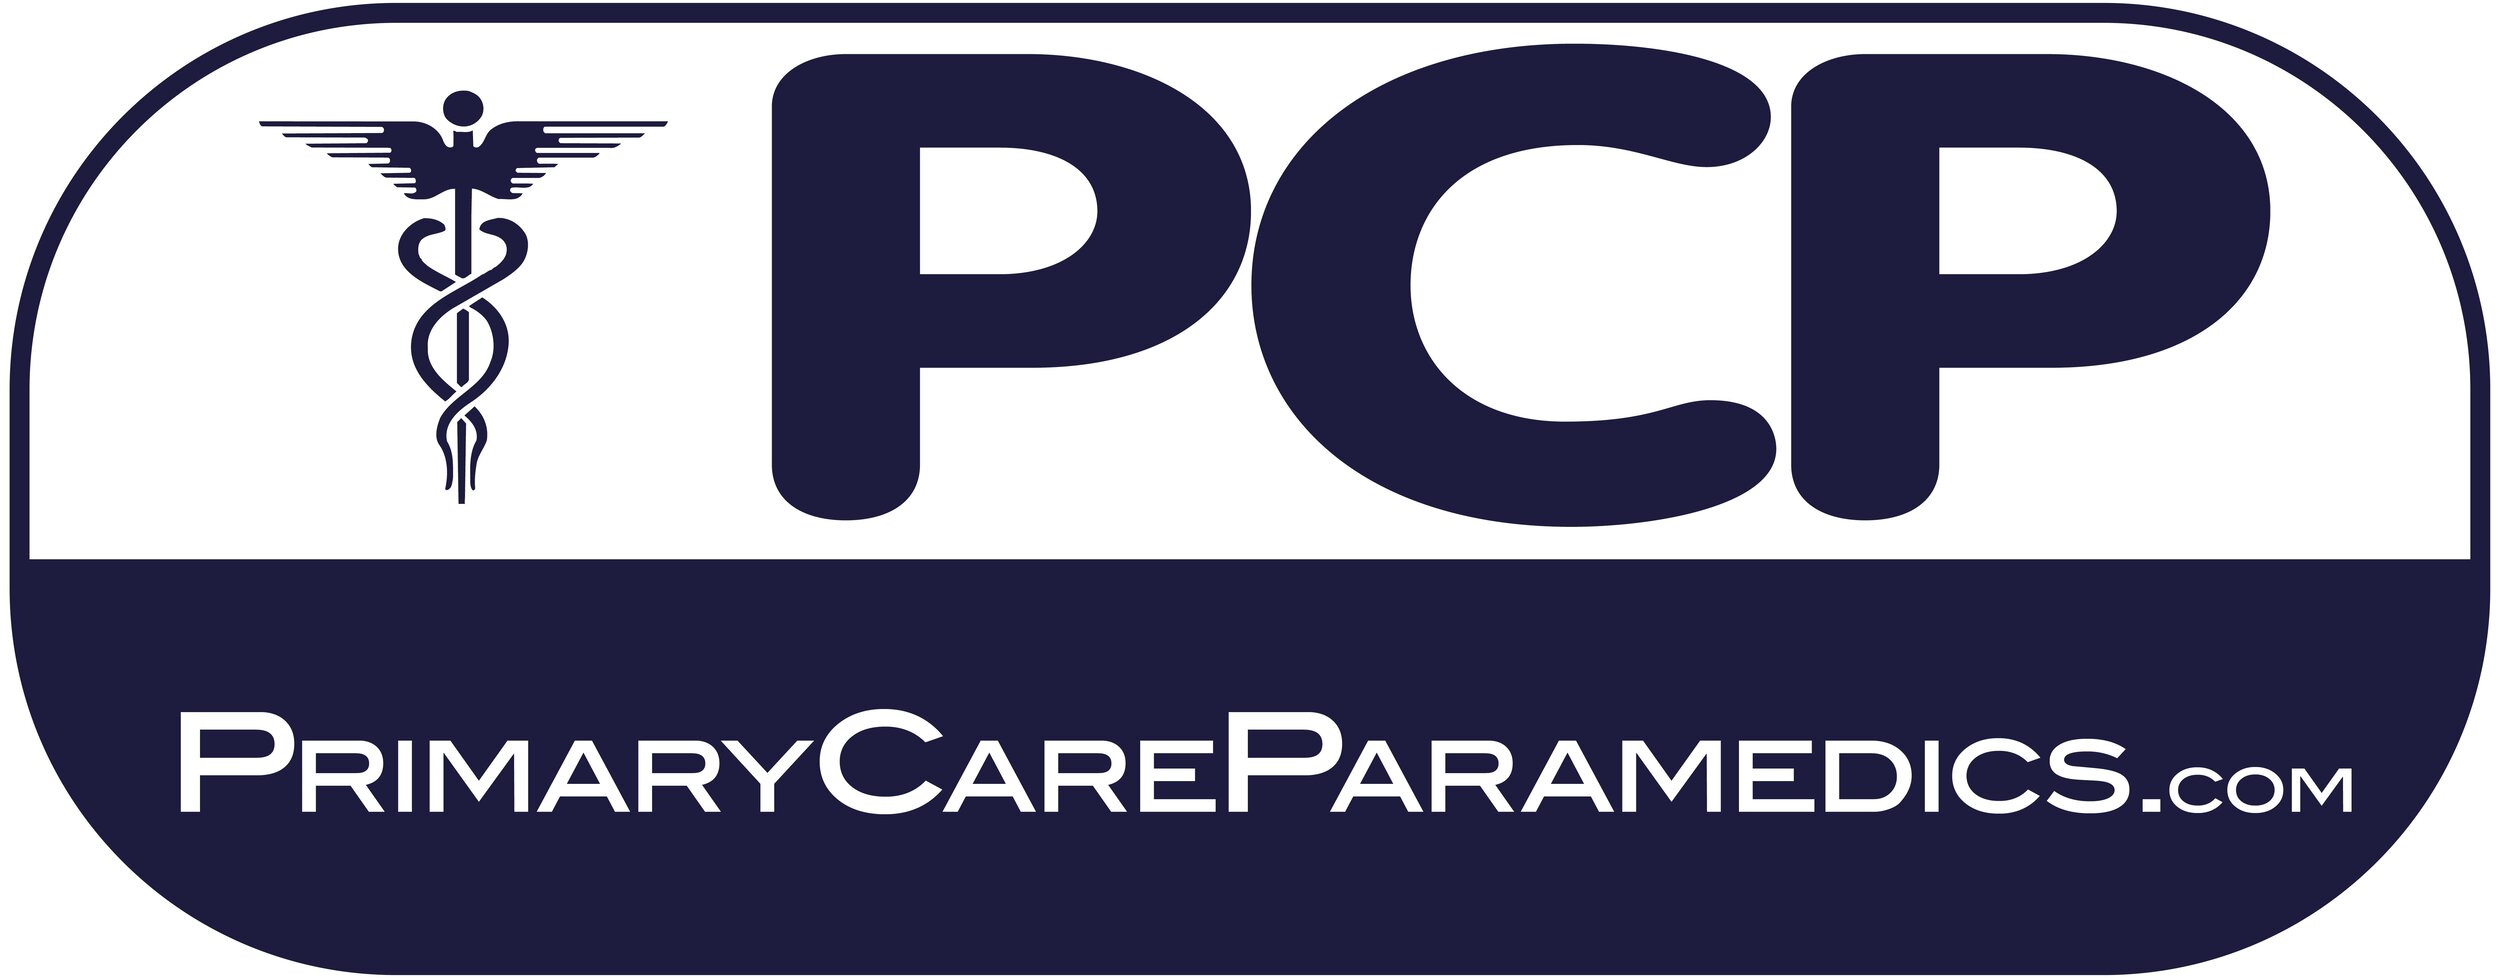 Primary Care Paramedics